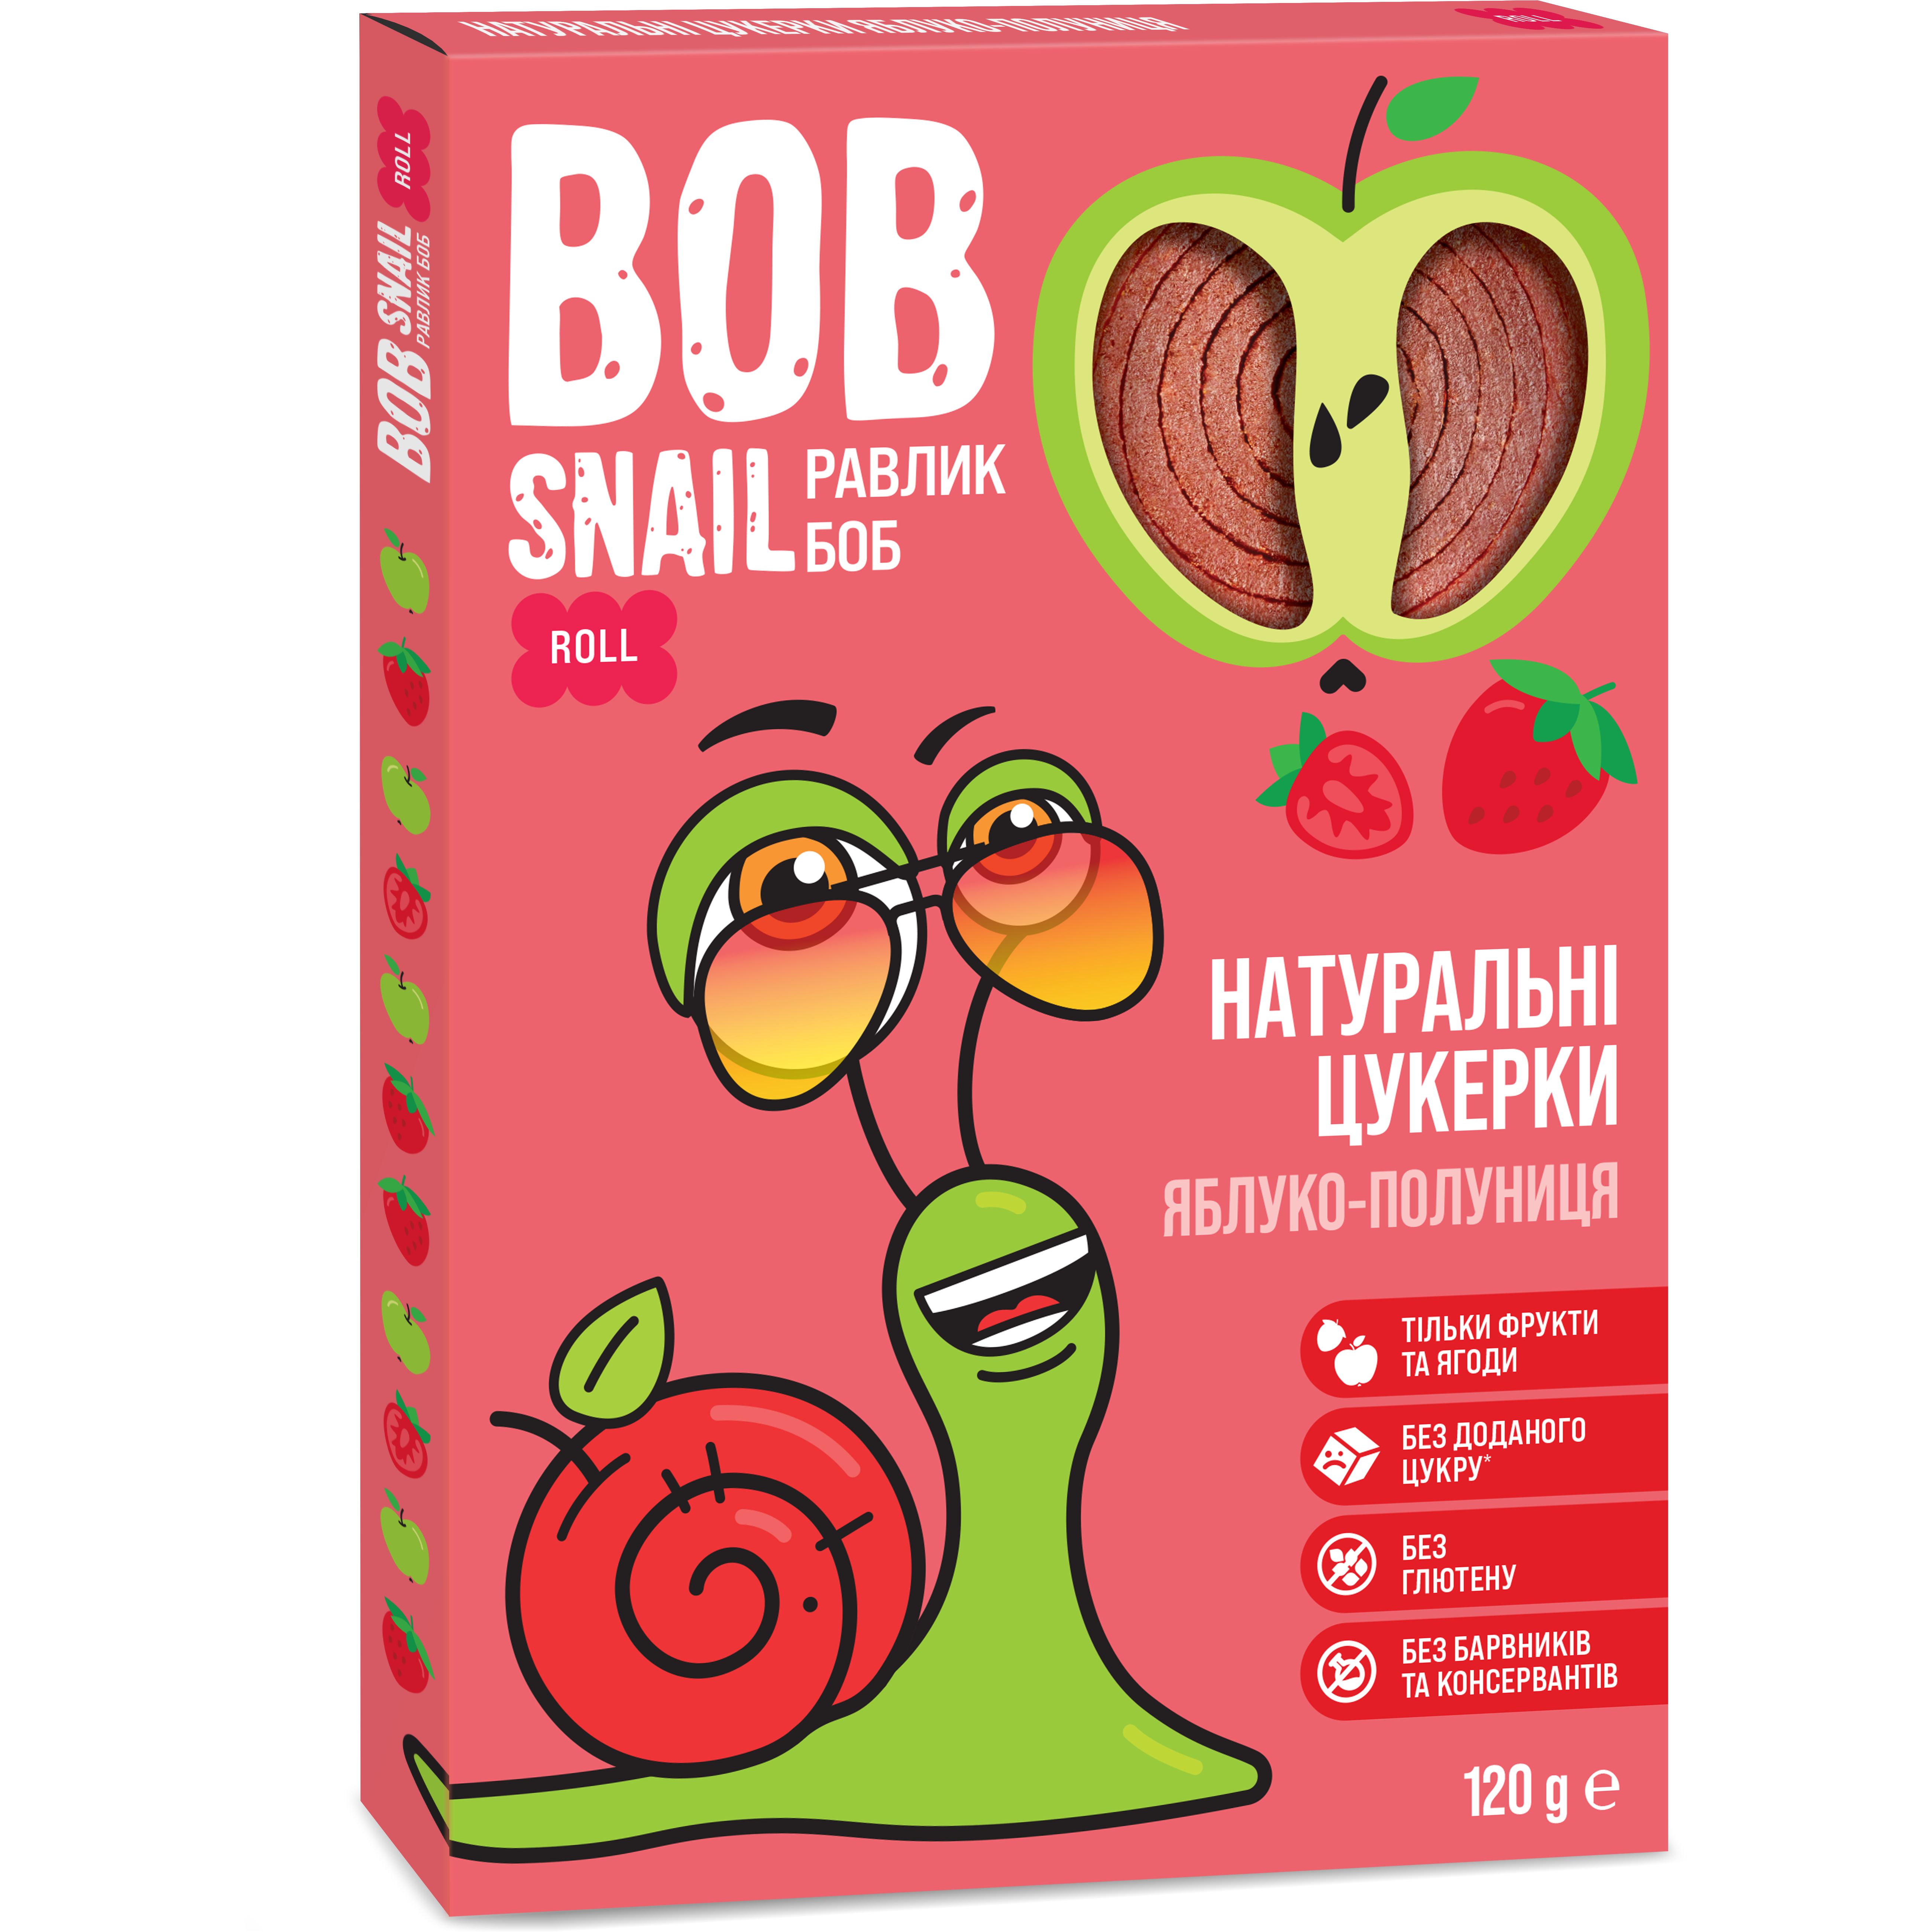 Фруктові яблучно-полуничні цукерки Bob Snail 120 г - фото 1